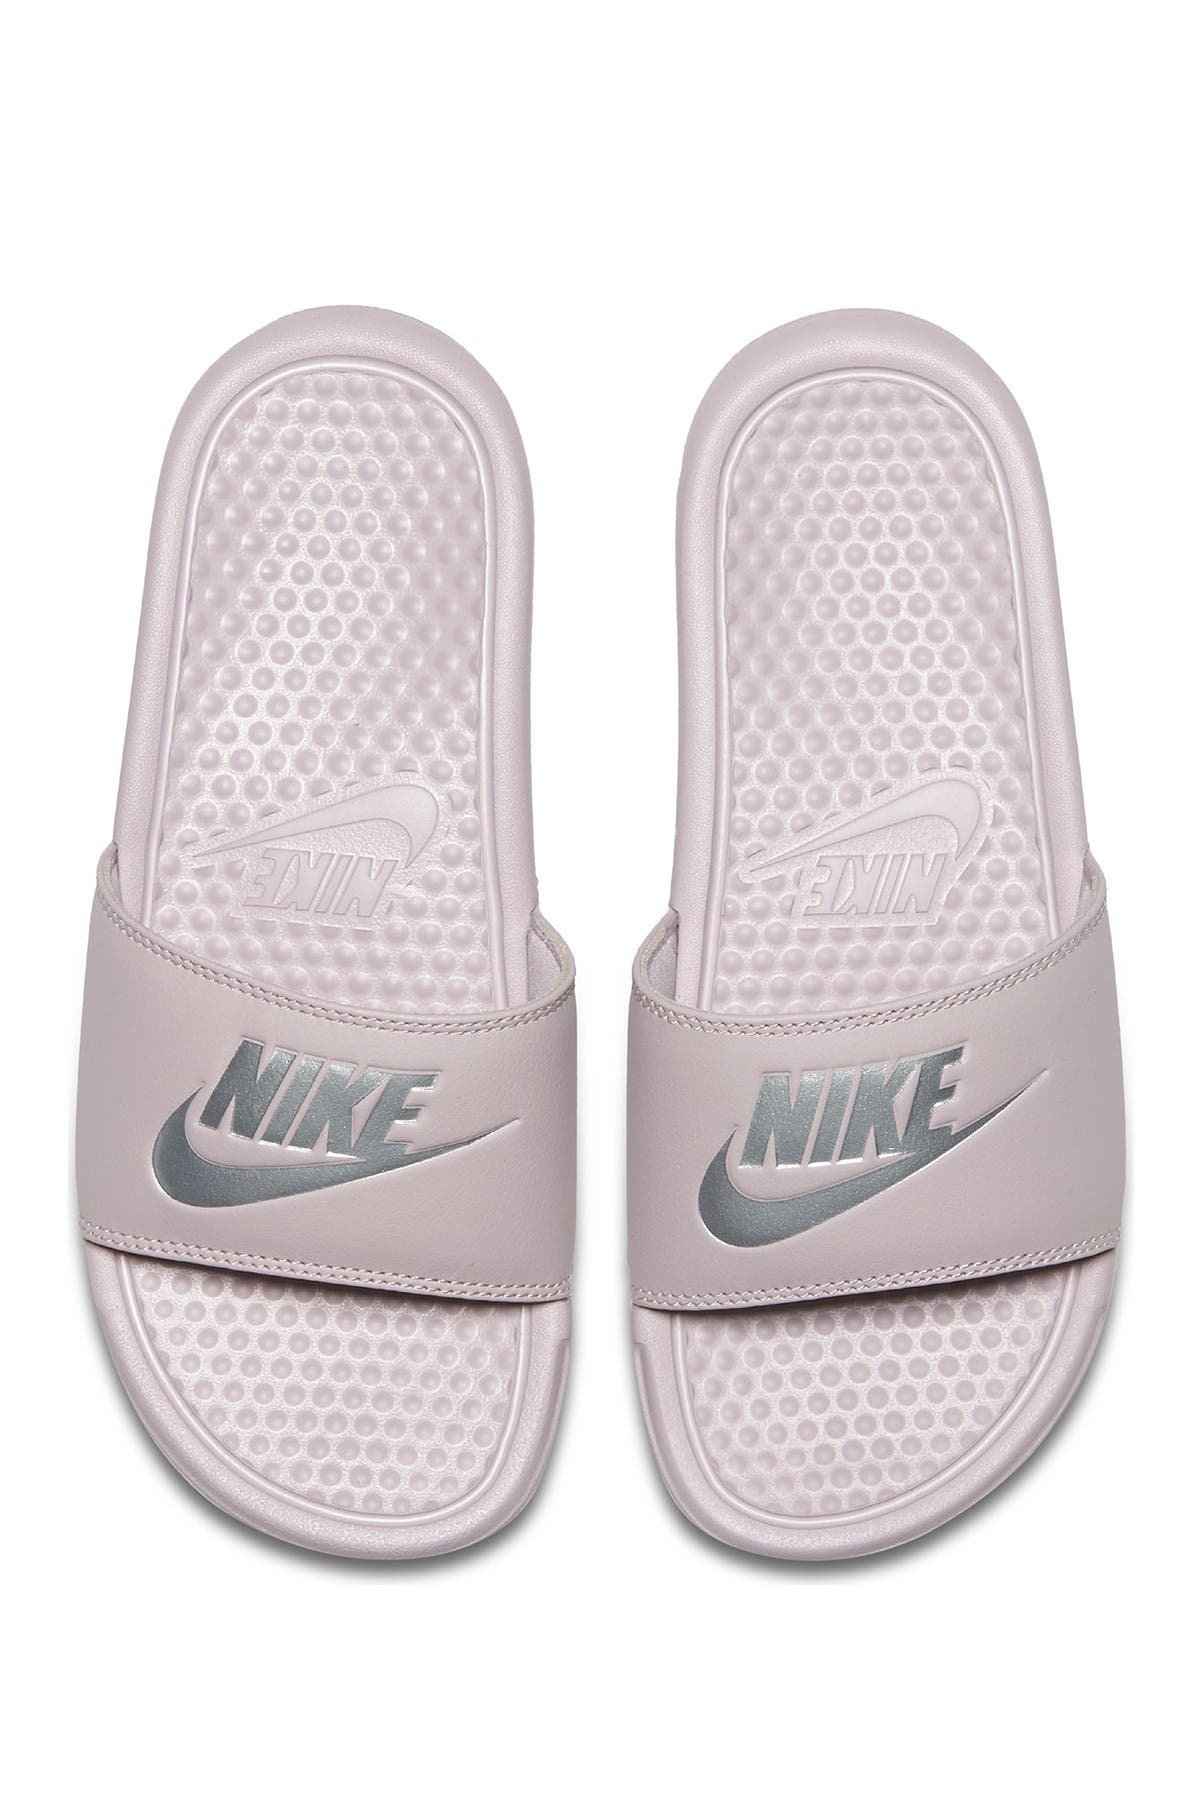 Nike | Benassi Slide Sandal | Nordstrom Rack